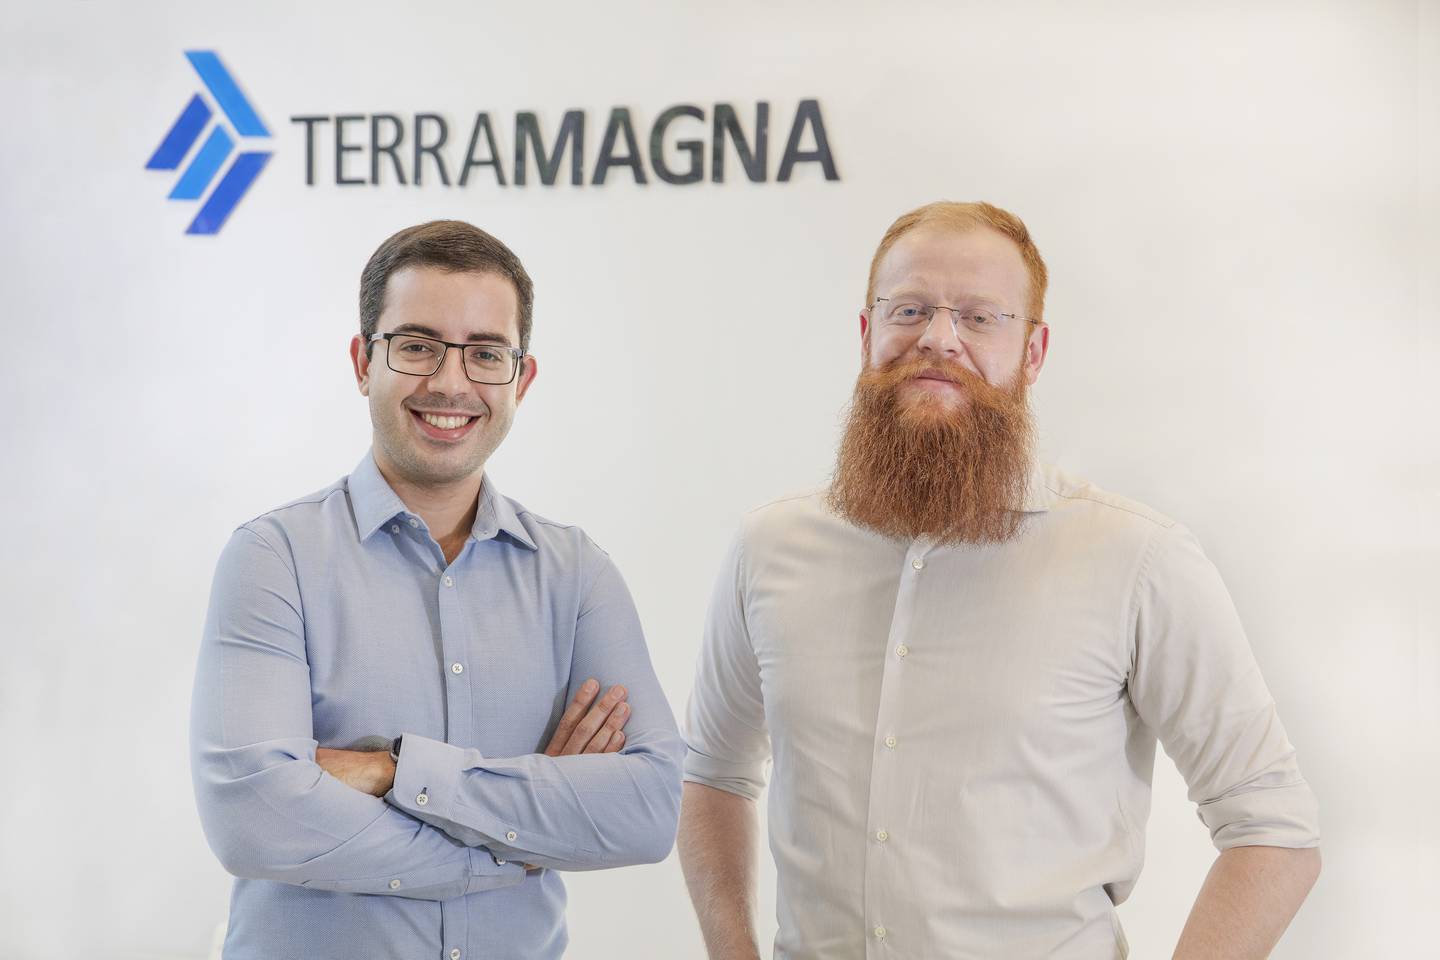 Rodrigo Marques and Bernardo Fabiani, co-founders of TerraMagna